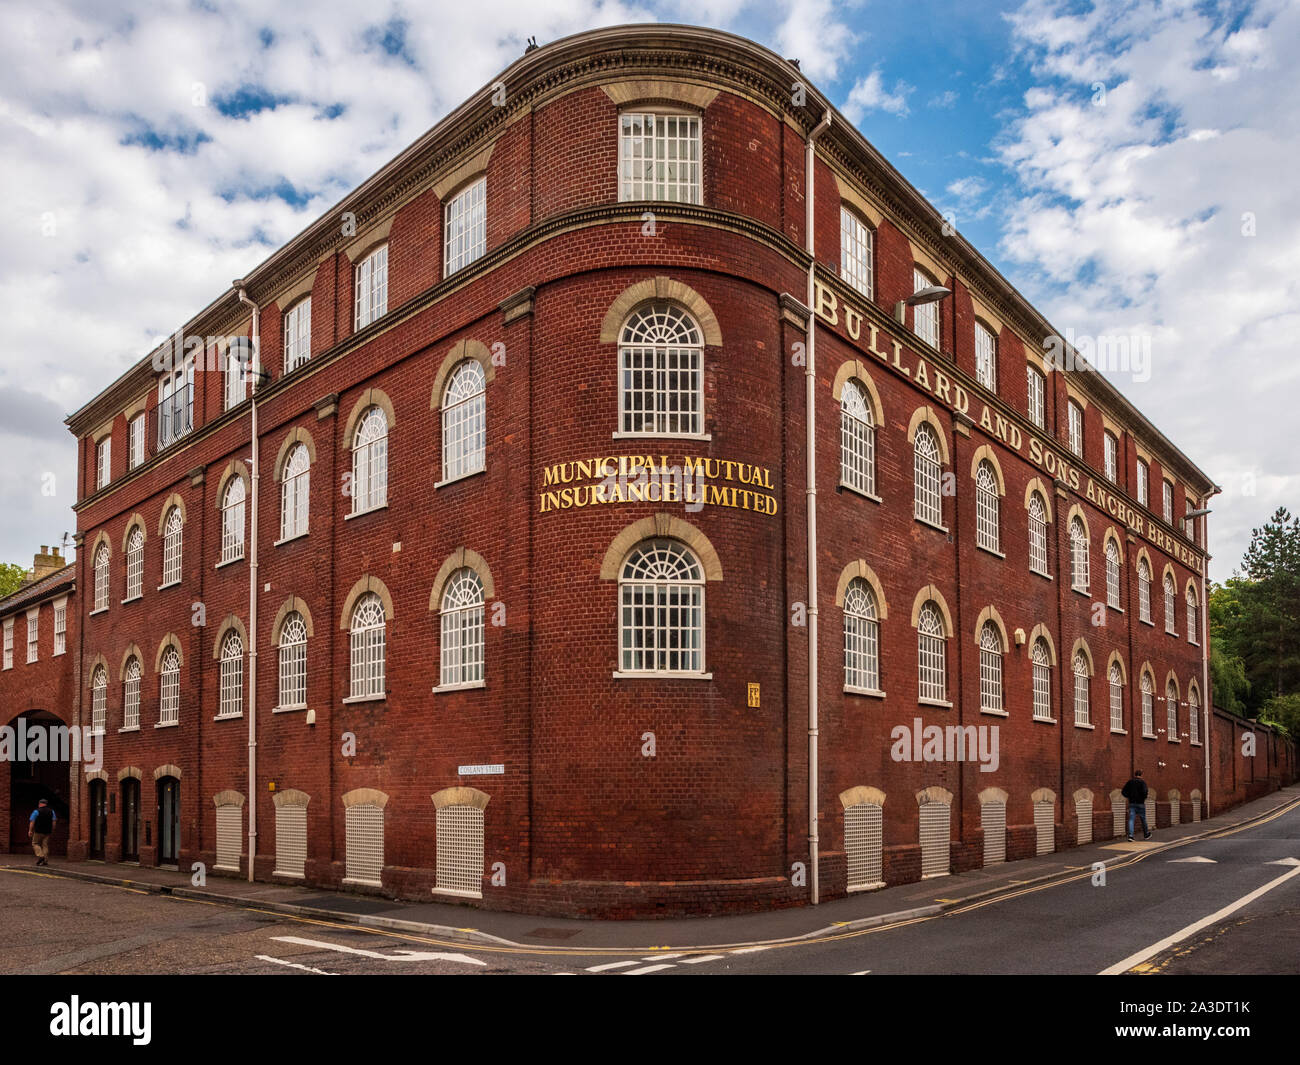 Ancien Mutual Insurance Limited Company Bureaux à Norwich dans le Bullard & Sons Ltd Anchor Brewery building. Maintenant un développement résidentiel. Banque D'Images